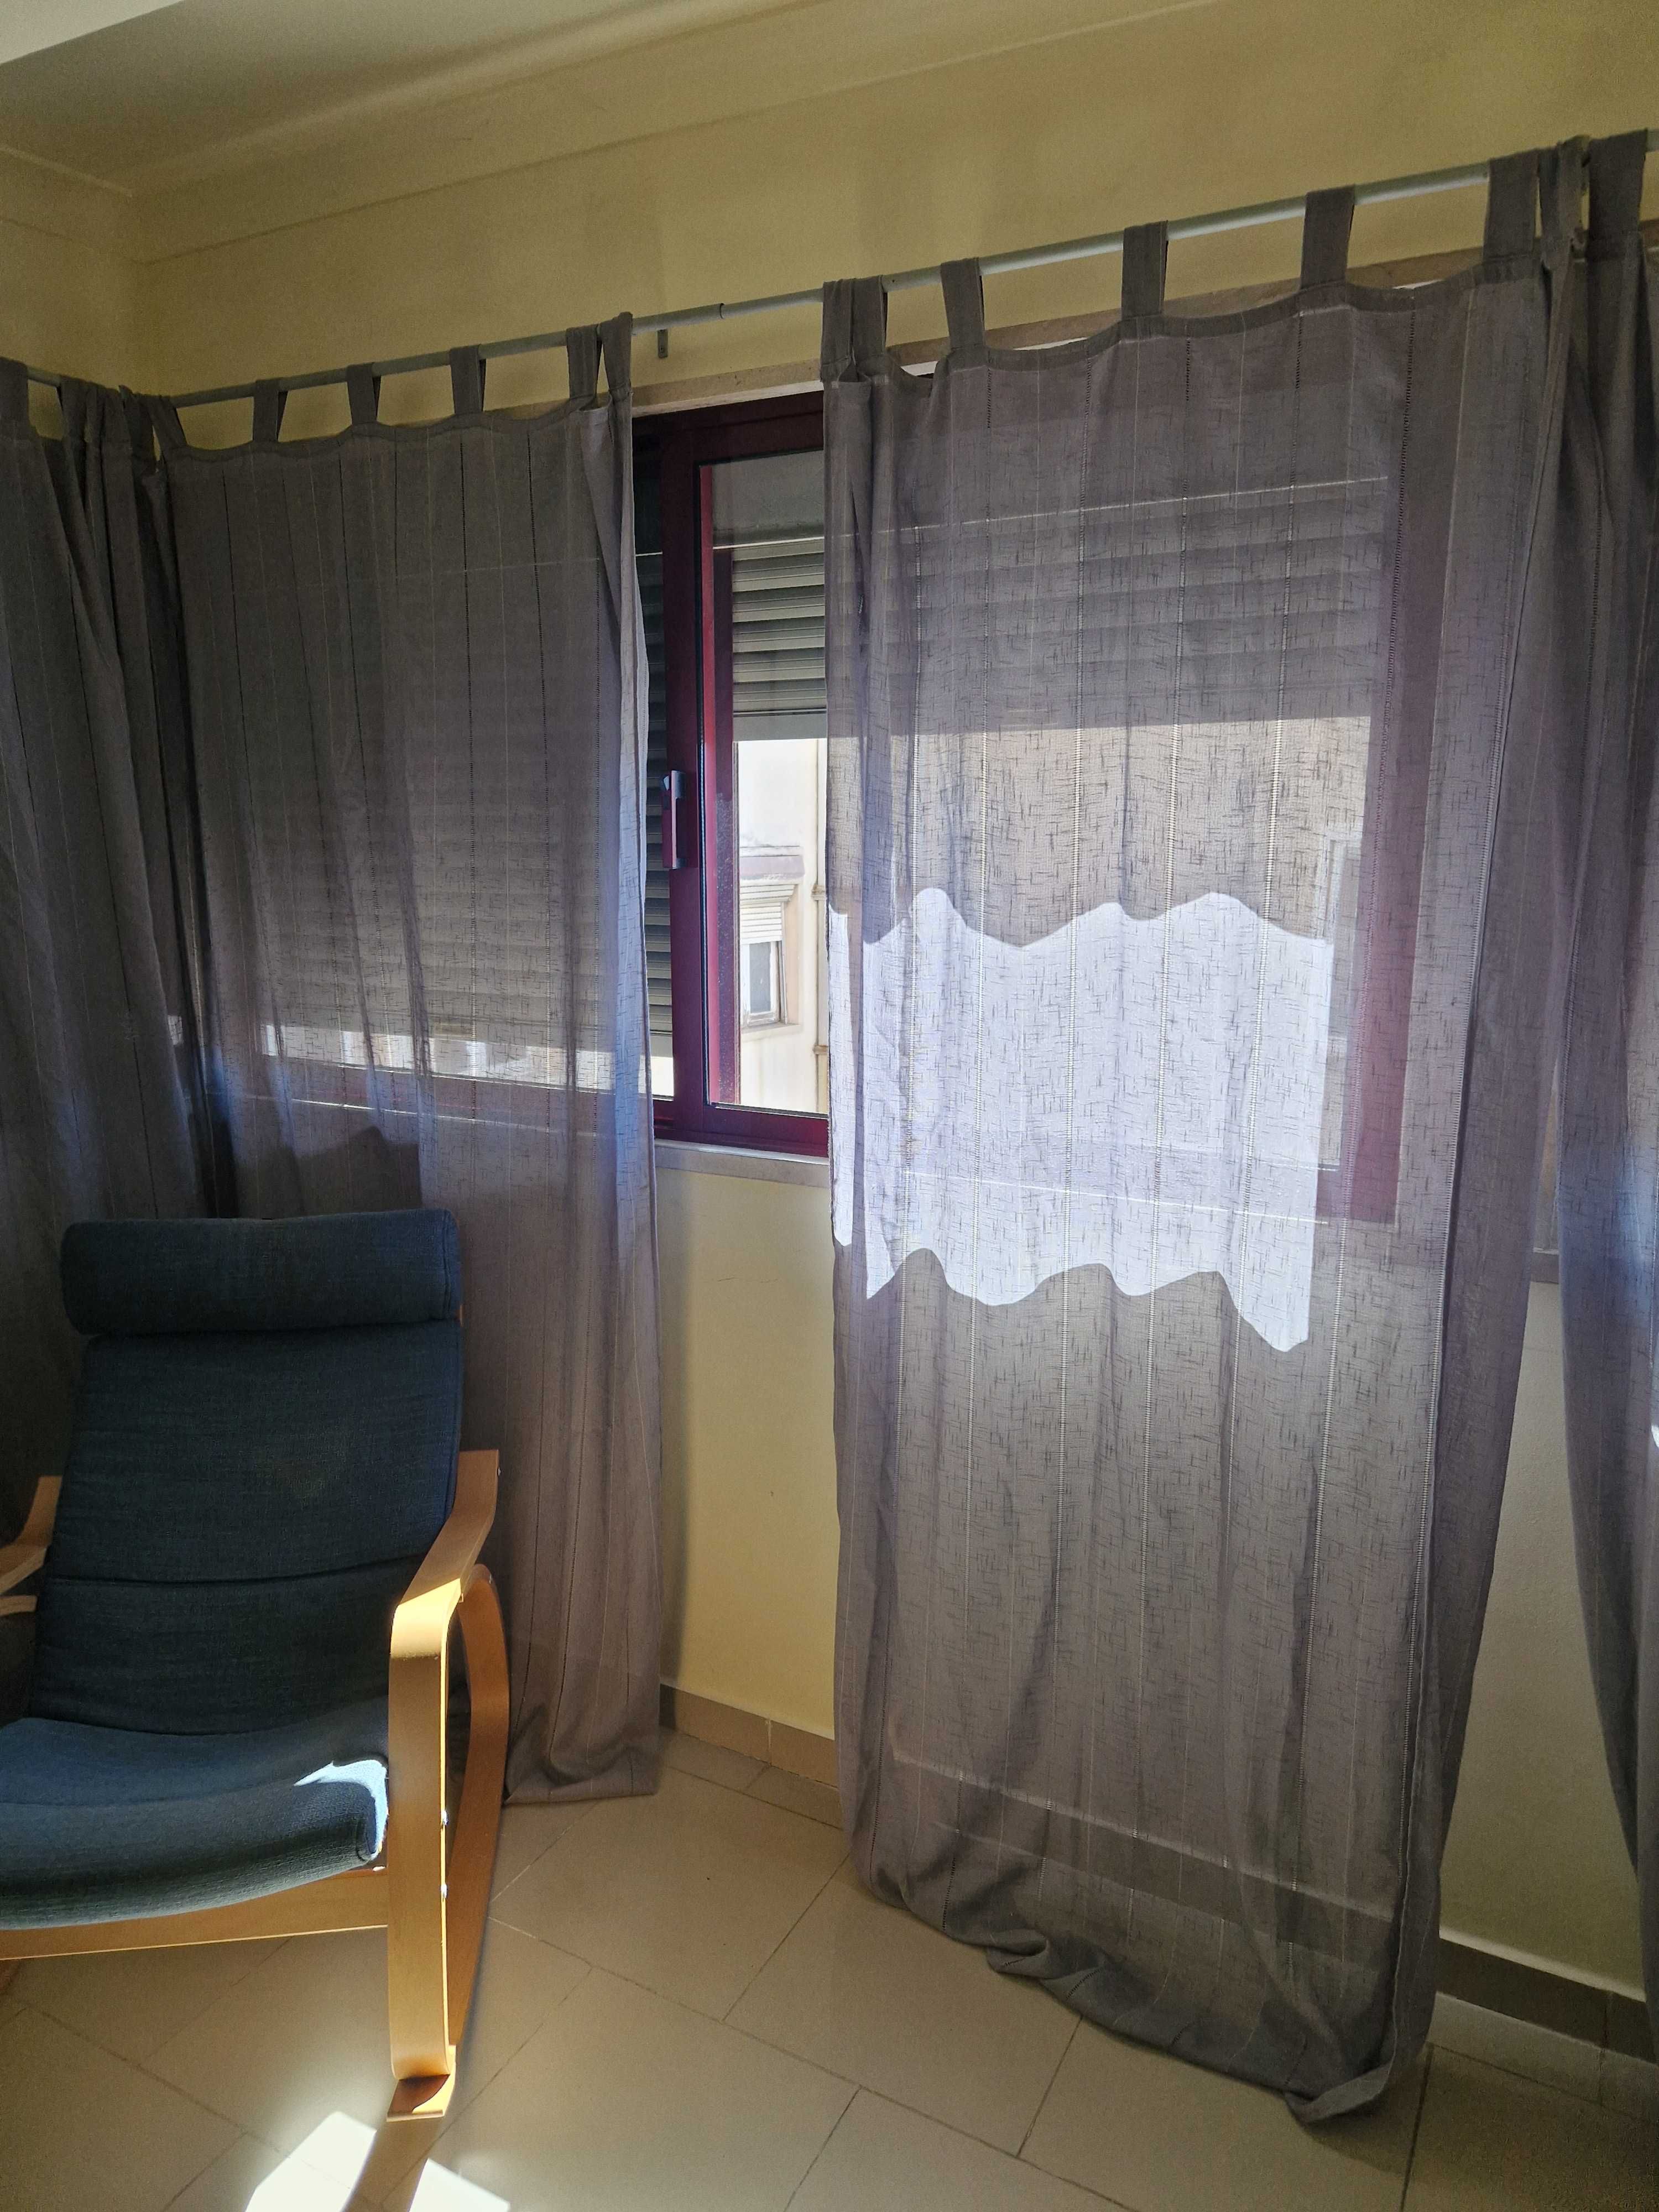 Cortinados e cortinas usadas